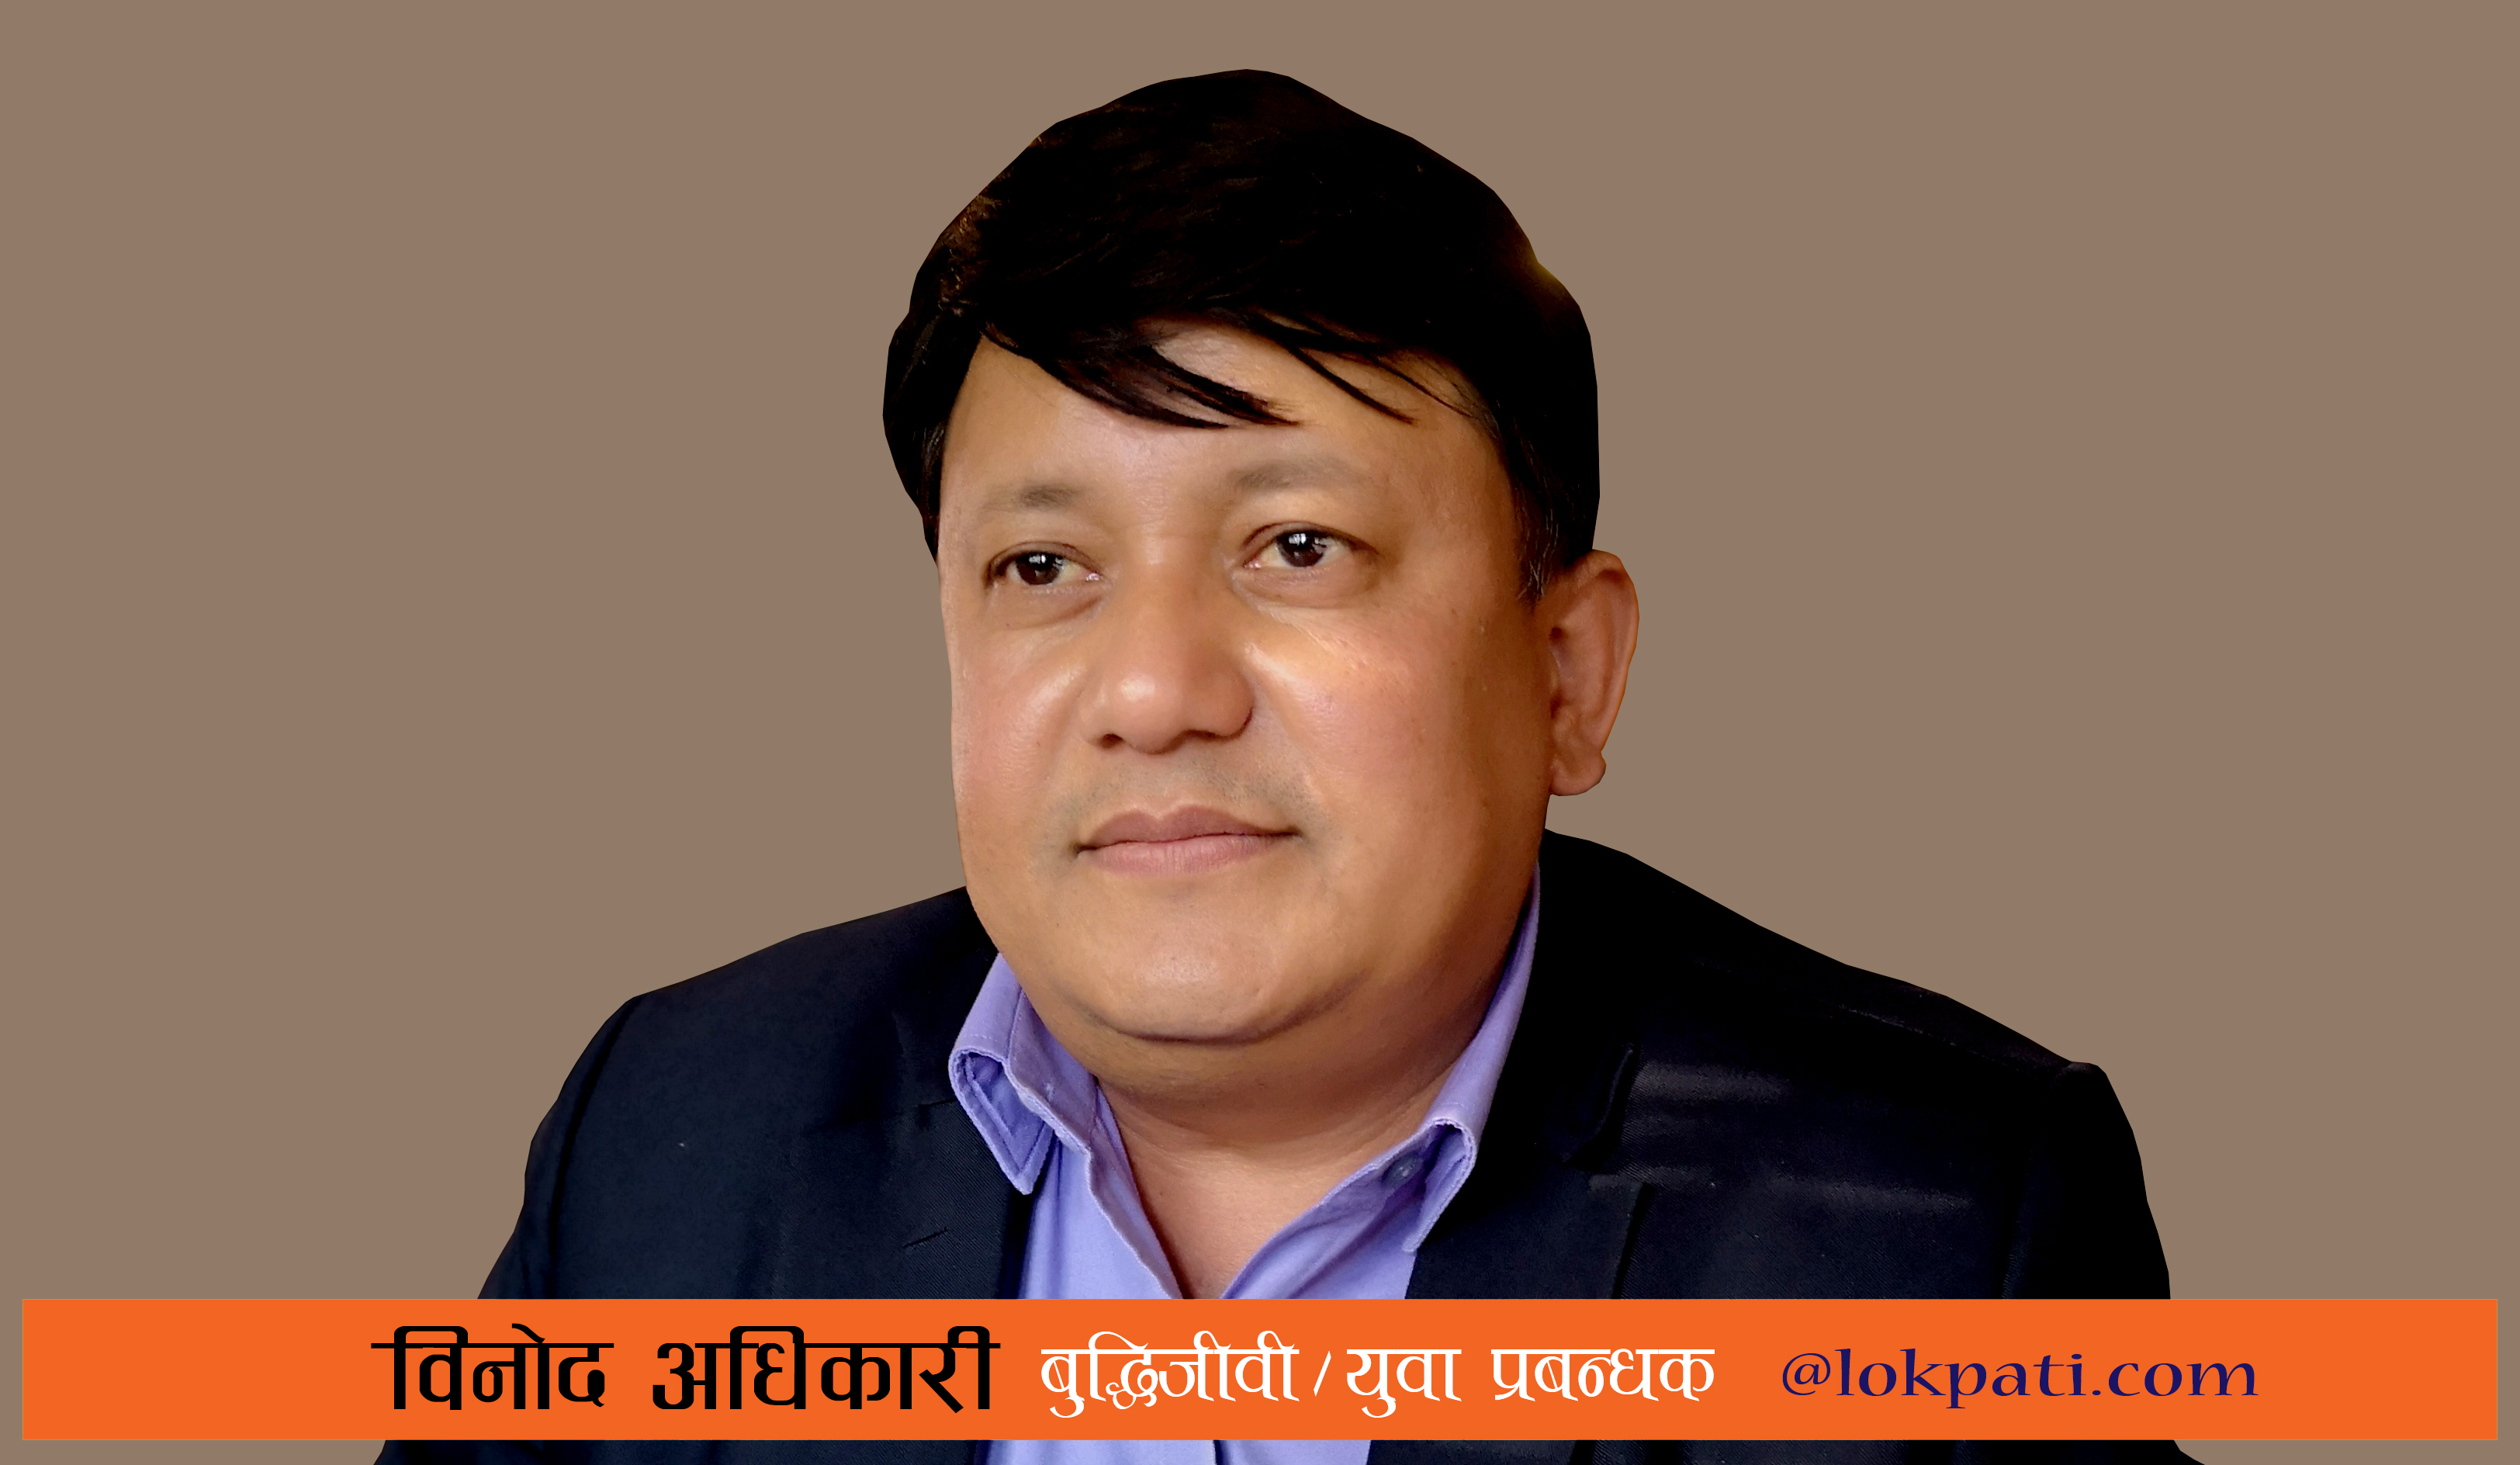 Binod Adhikari Manager